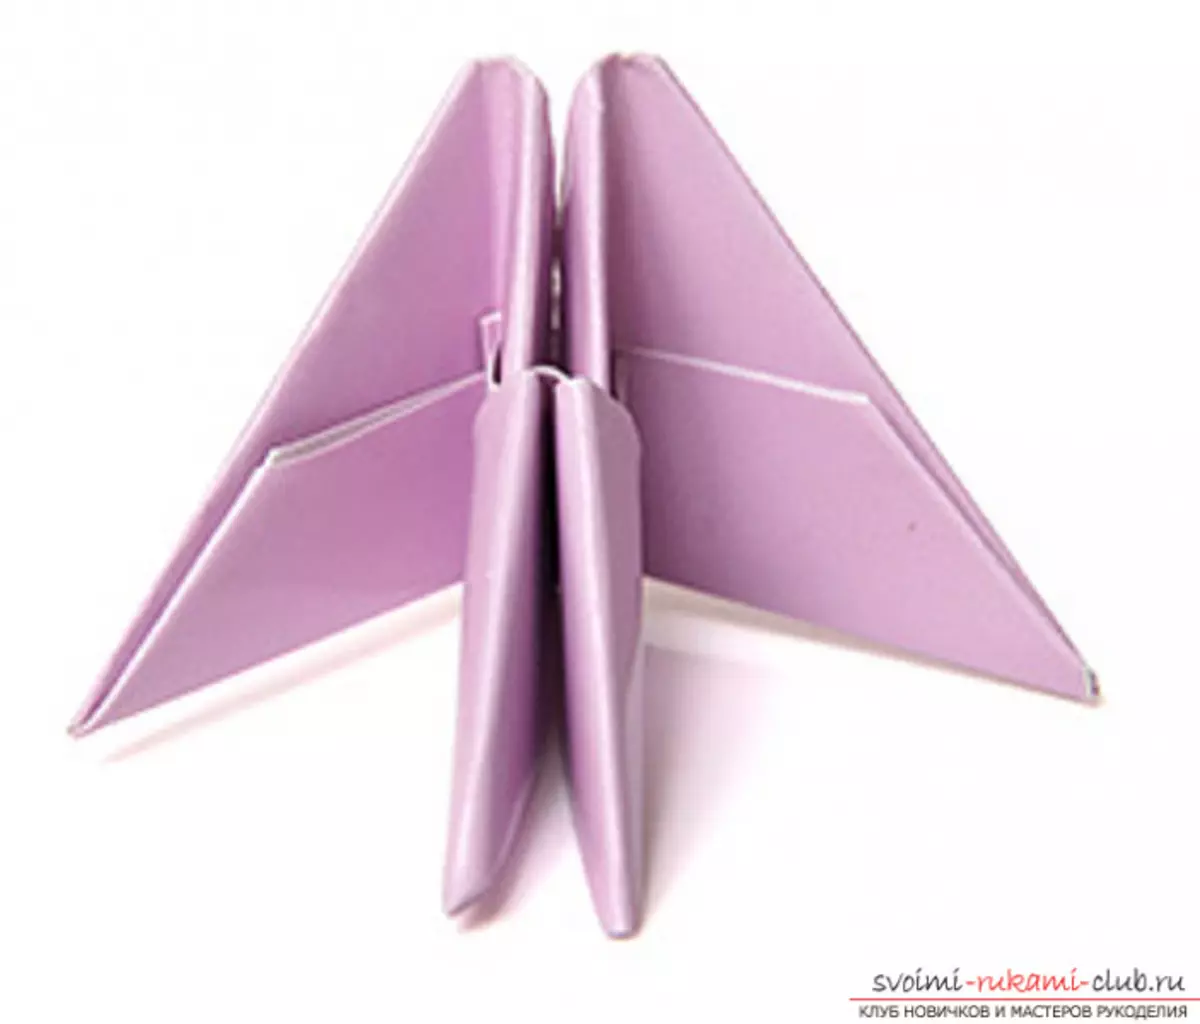 Lebed Origami de papier: comment faire étape par étape avec des photos et une vidéo